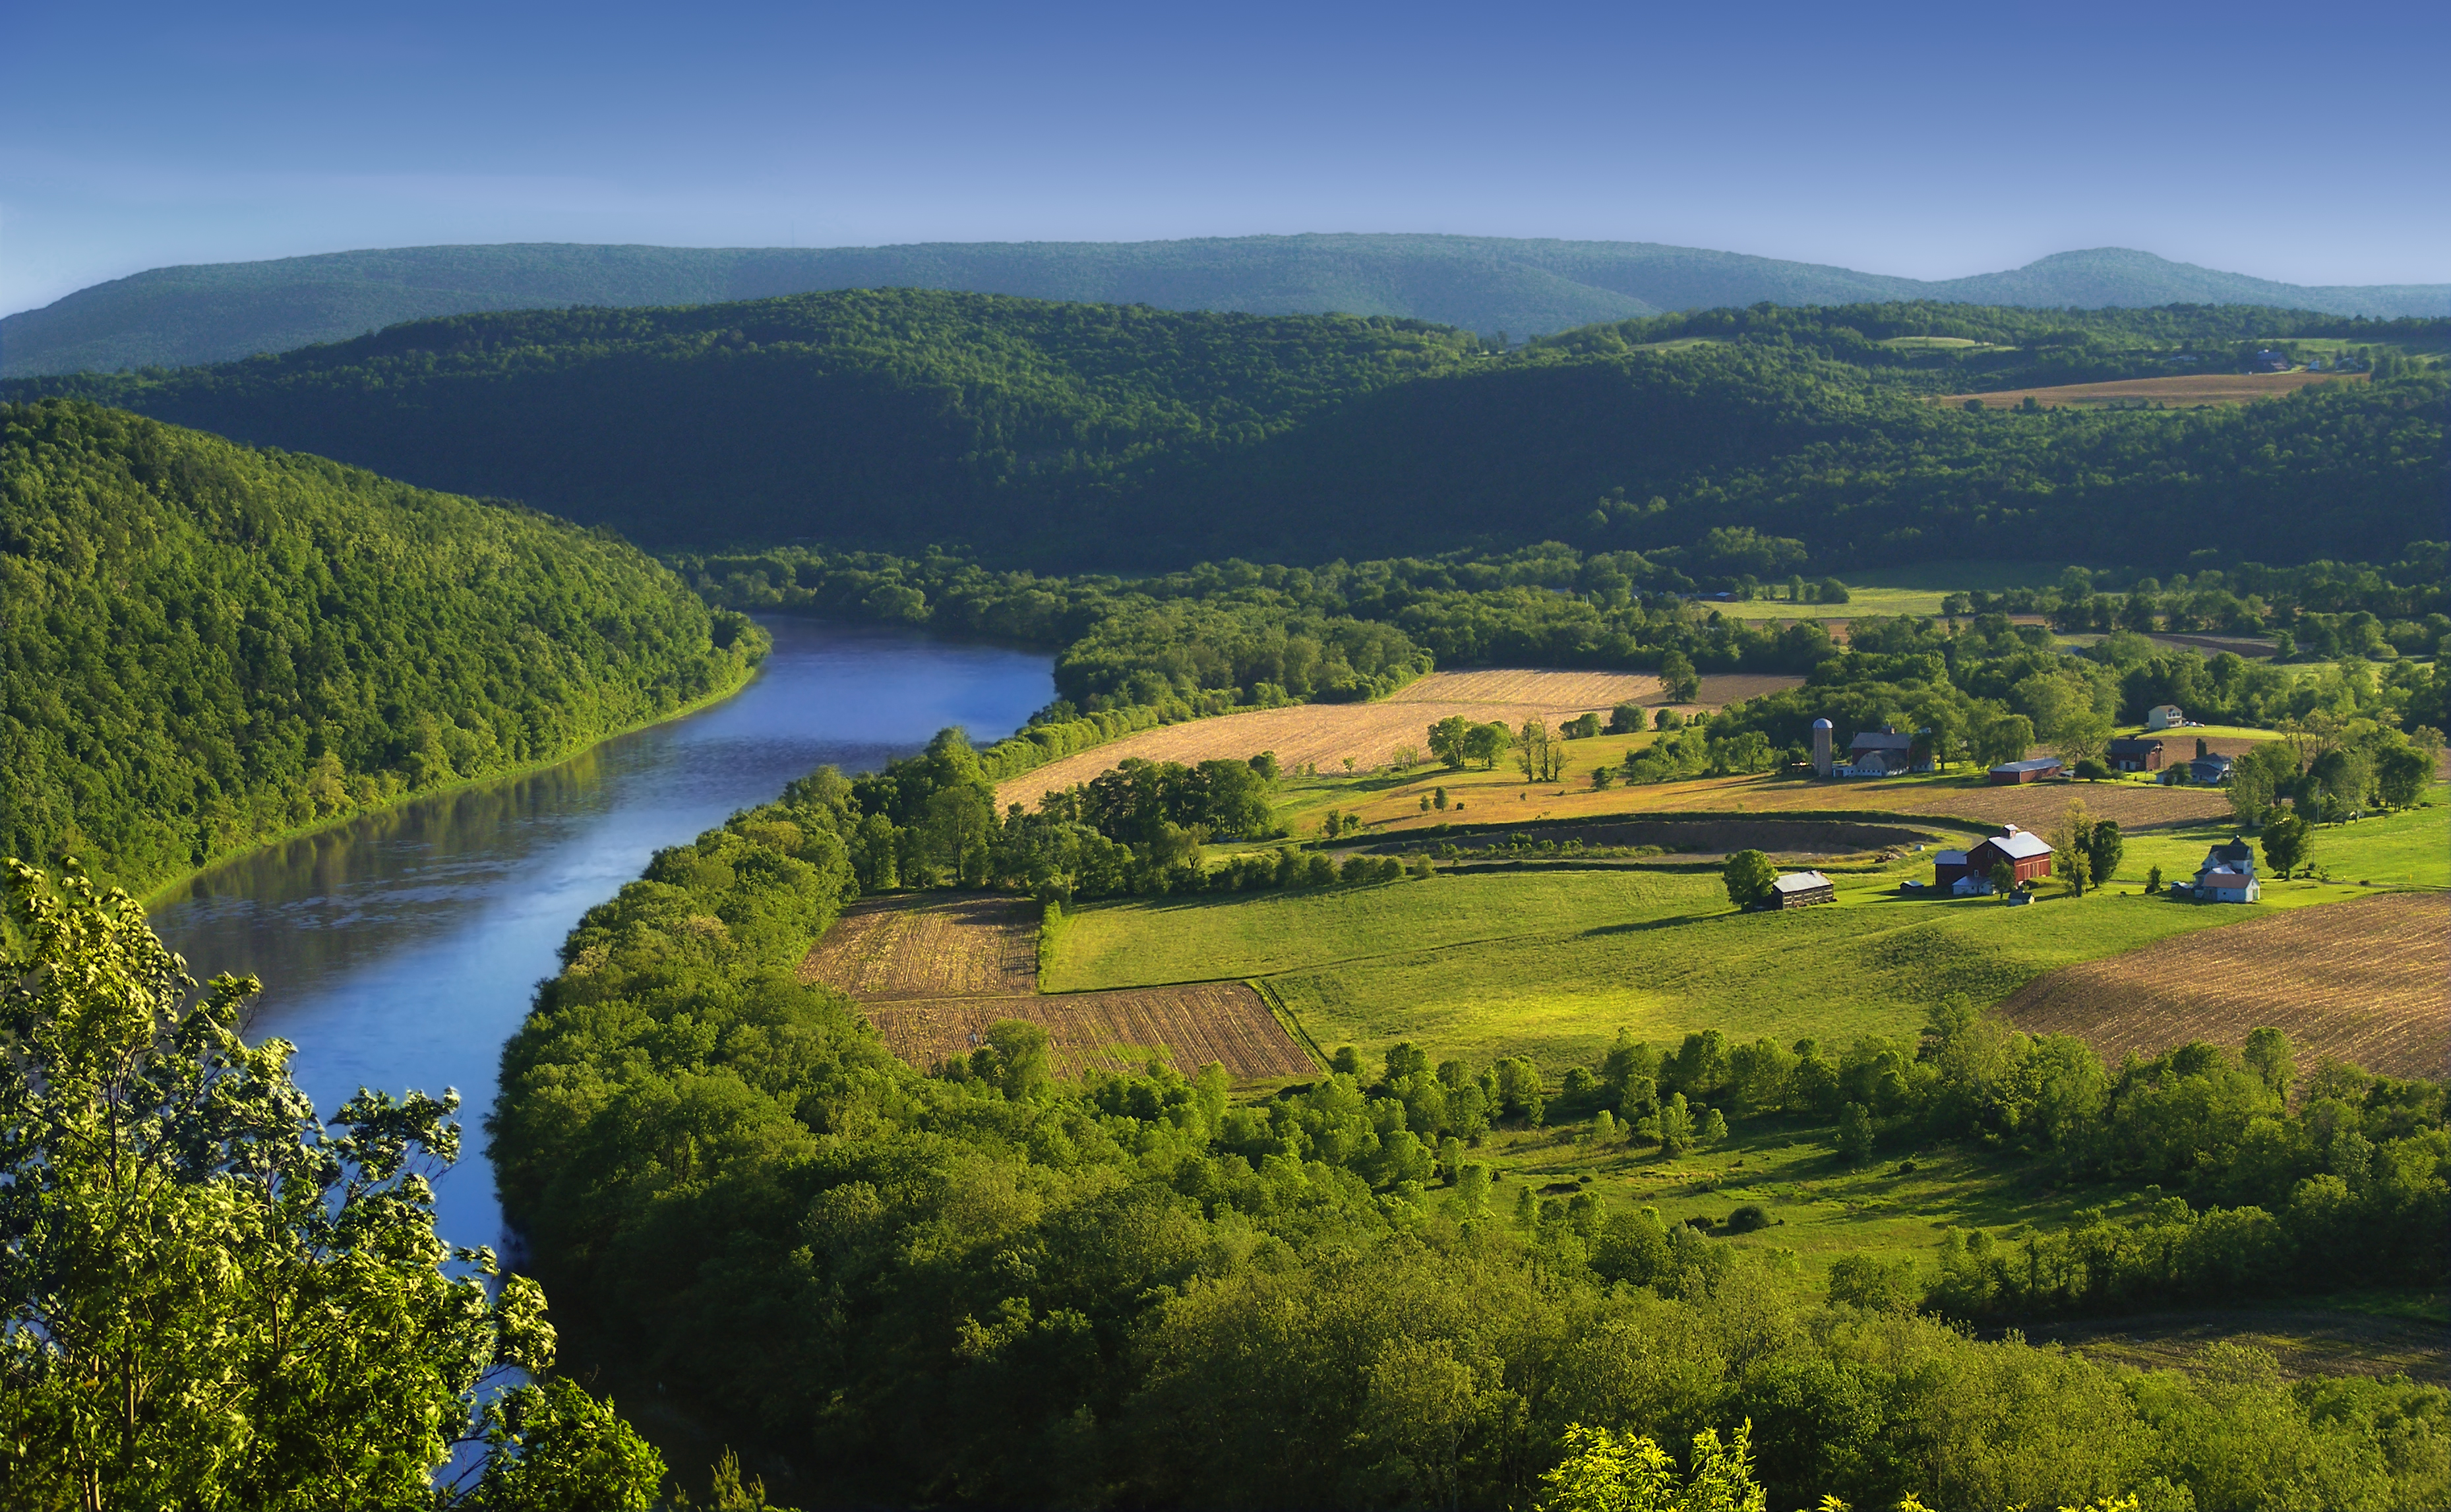 Susquehanna River - Wikipedia